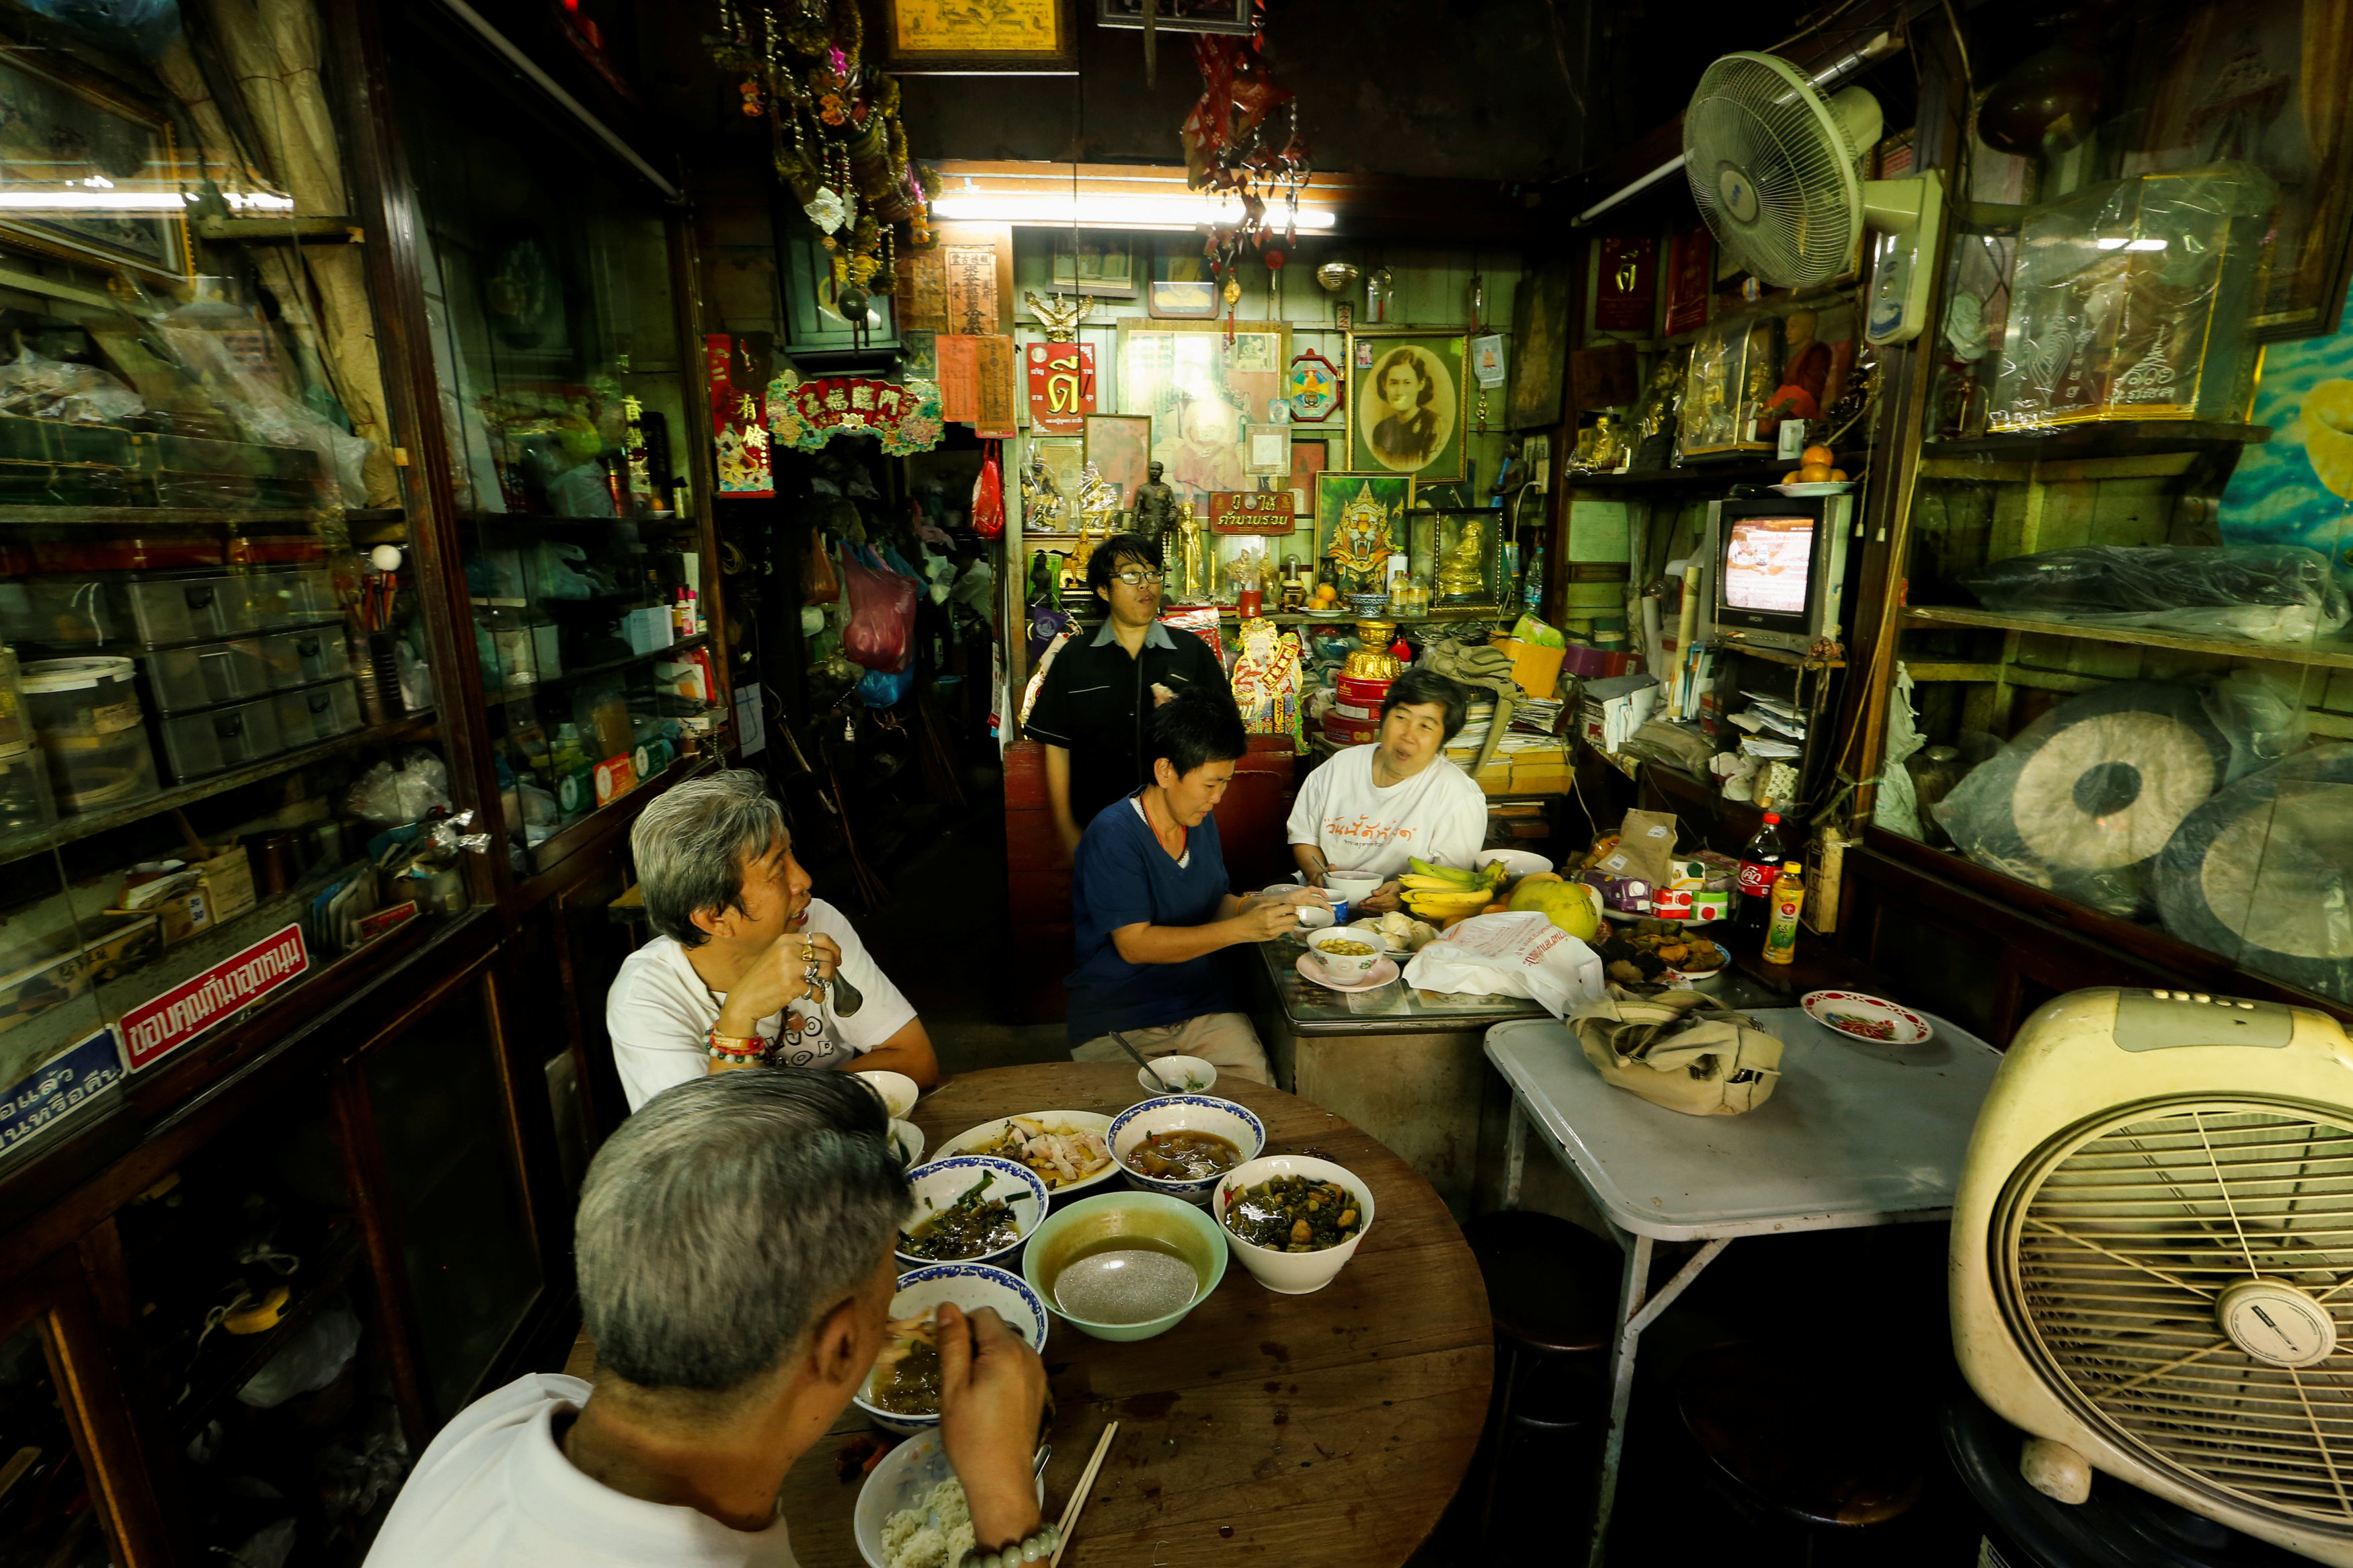 عائلة تايلاندية تتناول العشاء ليلة الاحتفال بالسنة الصينية الجديدة